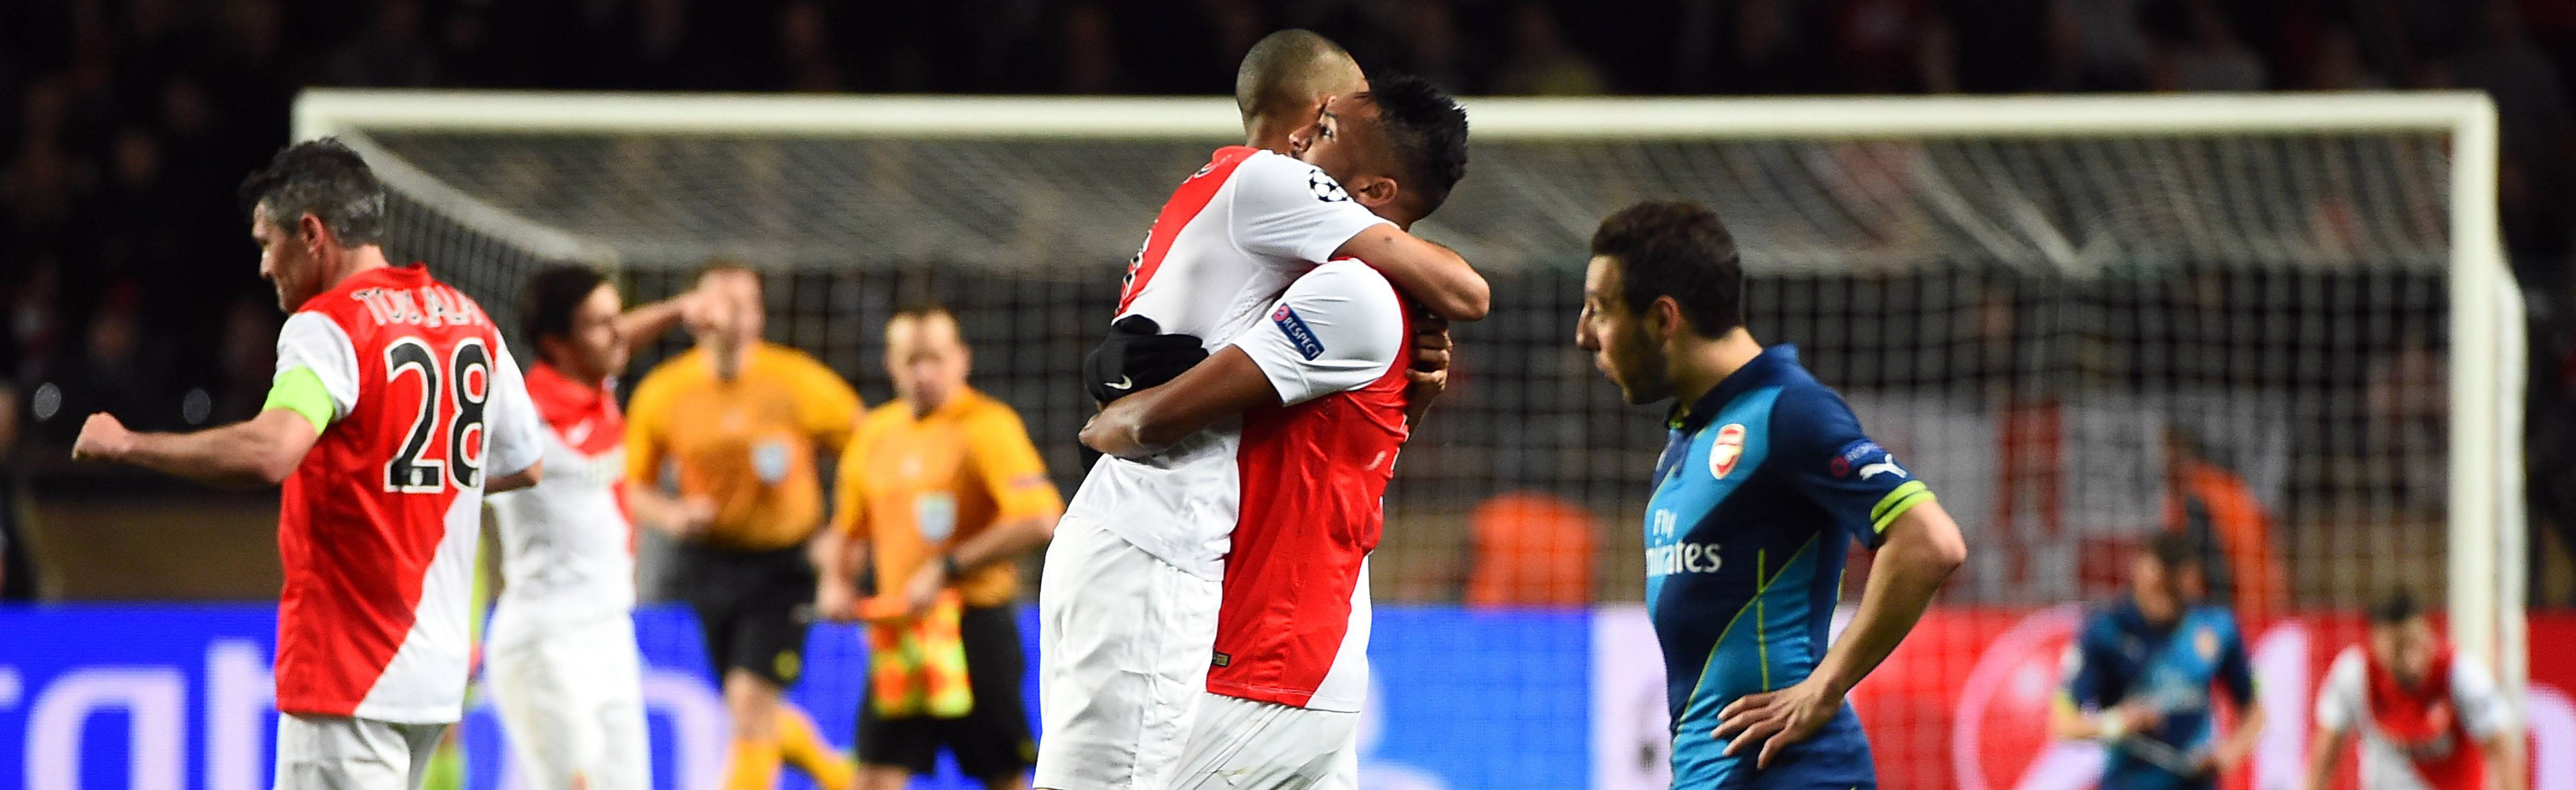 Op de voorgrond treurt Santi Cazorla na de uitschakeling van Arsenal tegen AS Monaco.